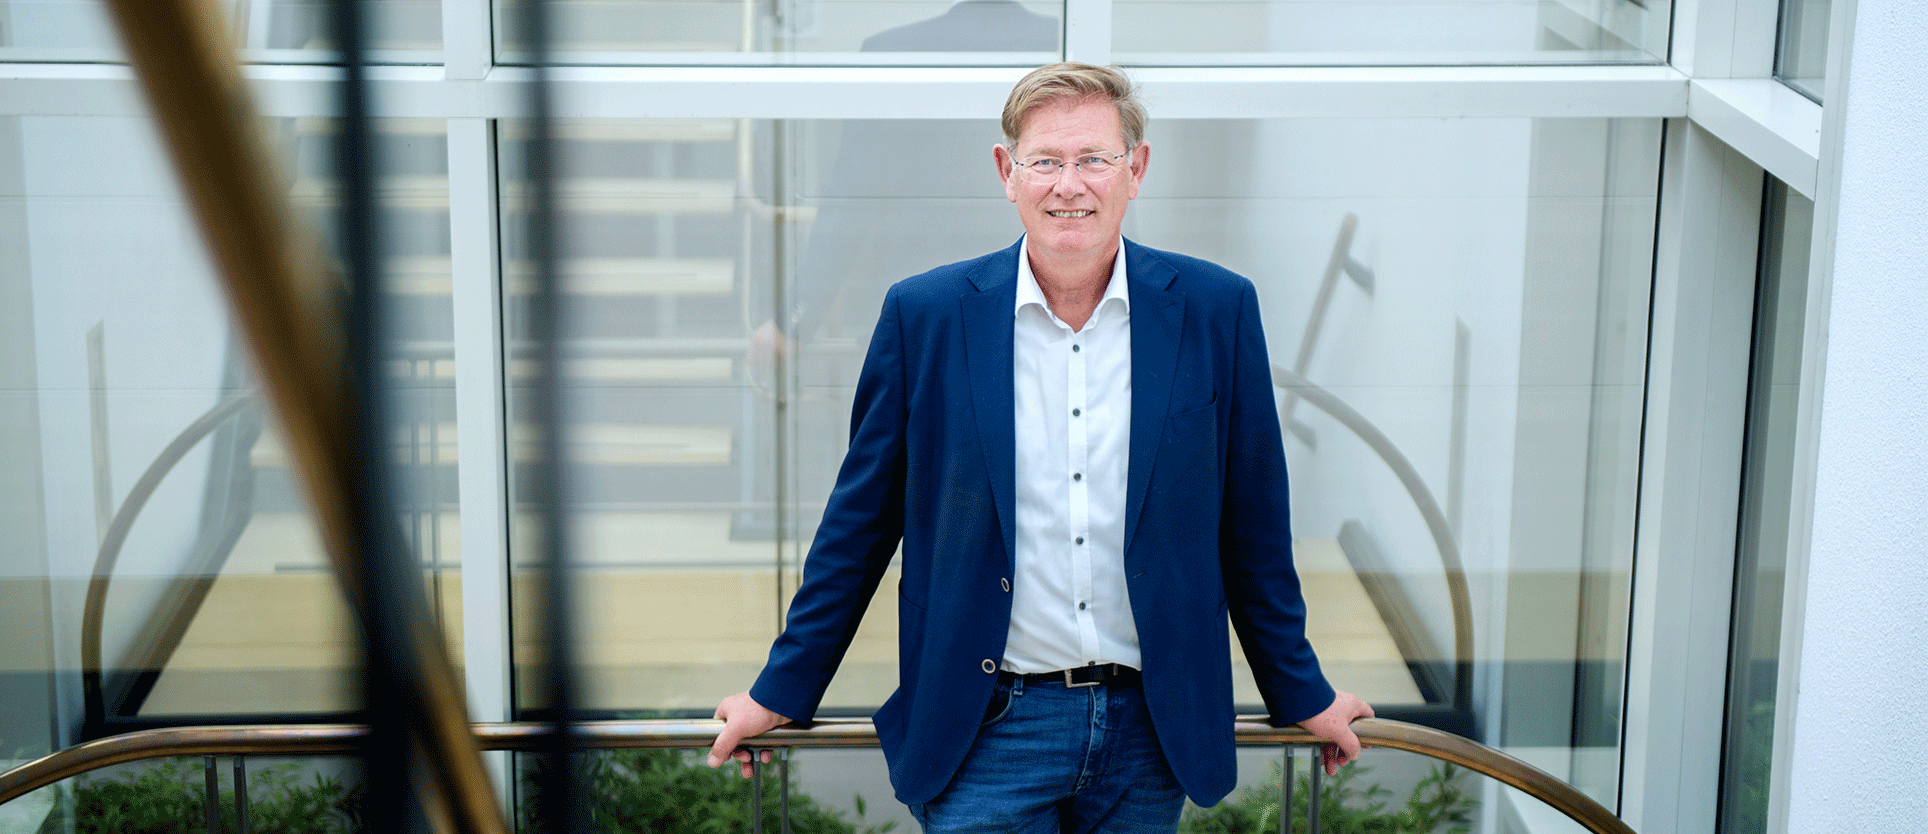 De lachende CEO, Frans Mulder